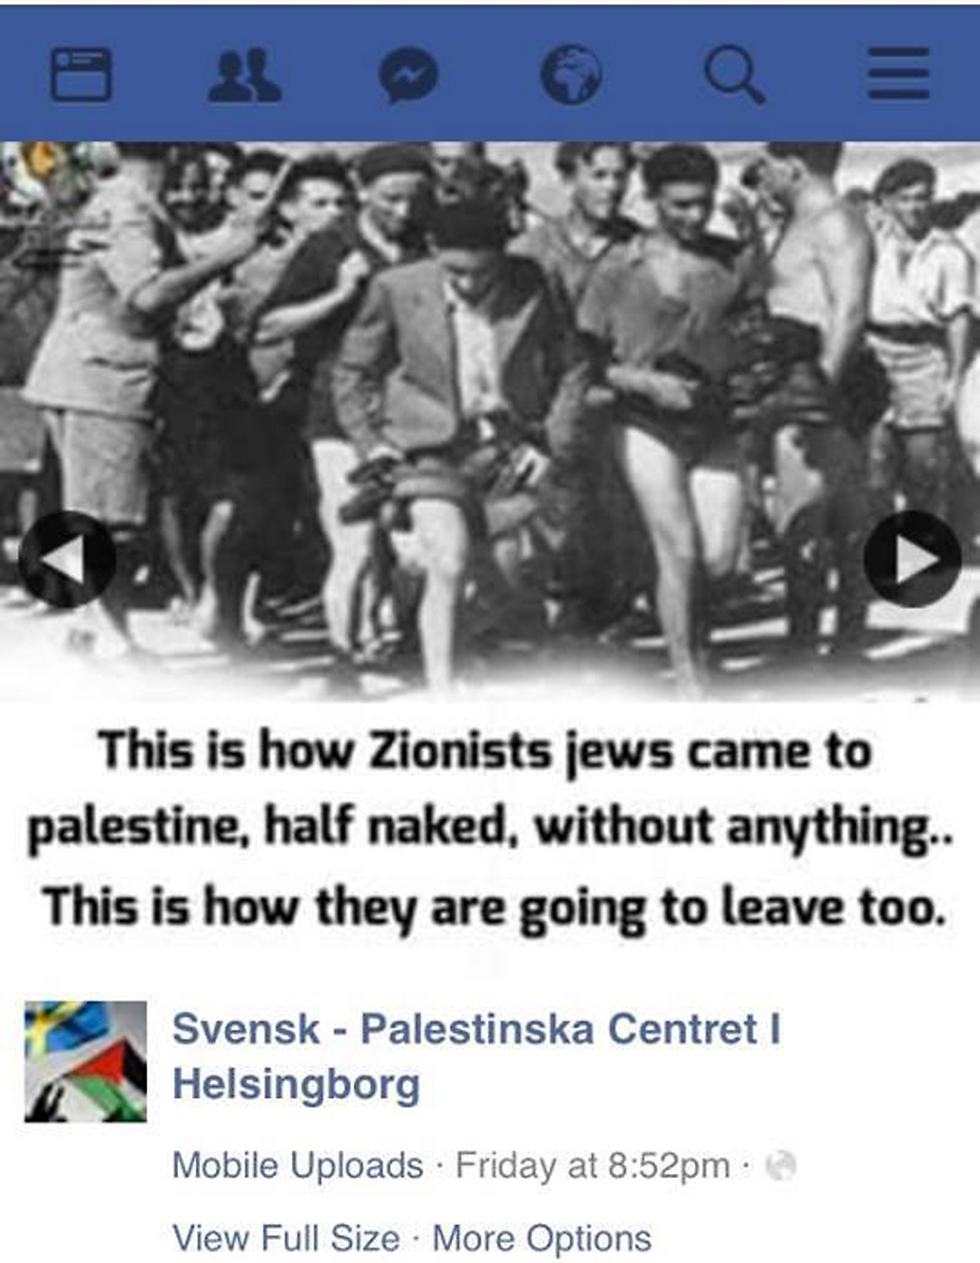 אחד הפוסטים האנטישמיים של הארגון שהוסר עקב לחצים ופניות לפייסבוק ()